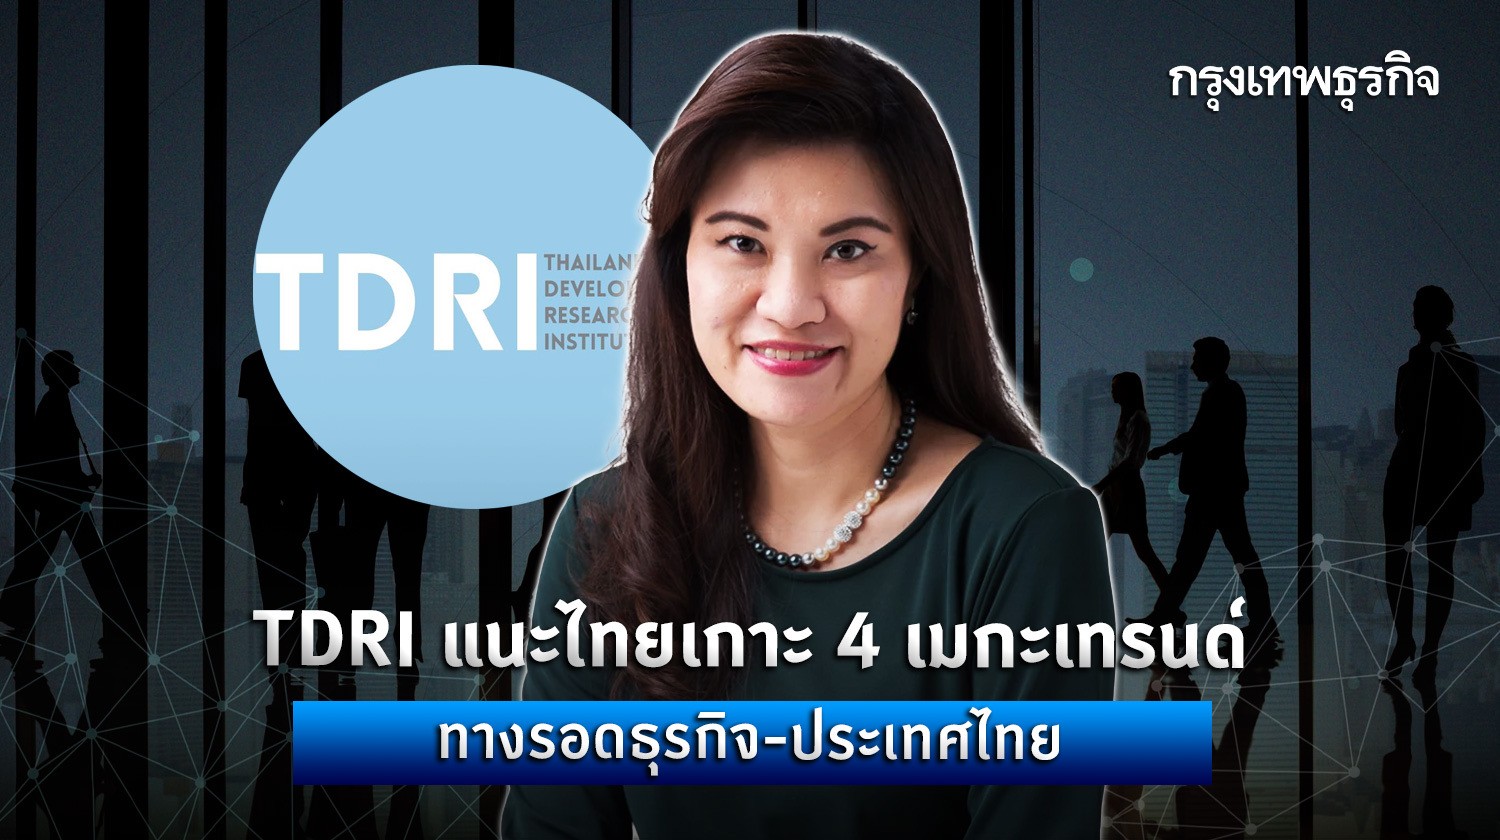 tdri แนะไทยเกาะ 4 เมกะเทรนด์ ทางรอดธุรกิจ - ประเทศไทย